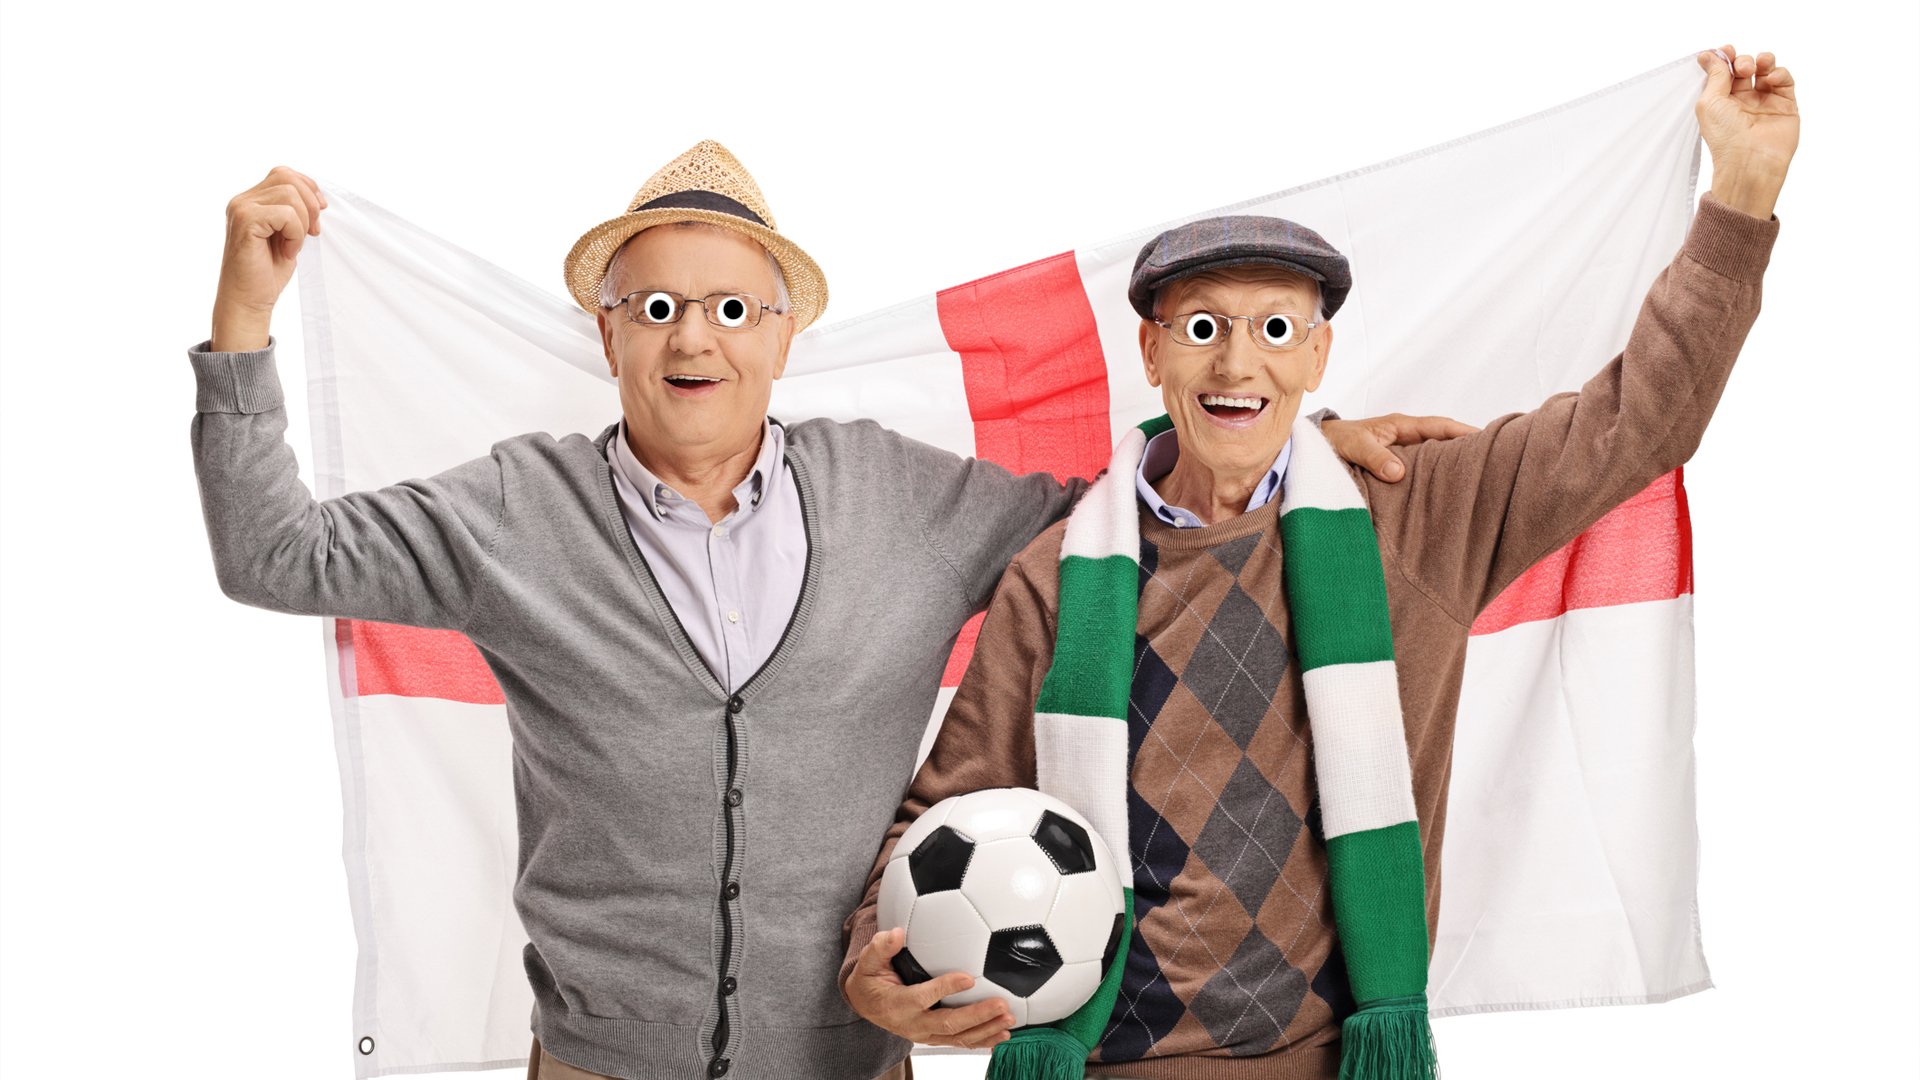 Two elderly football fans